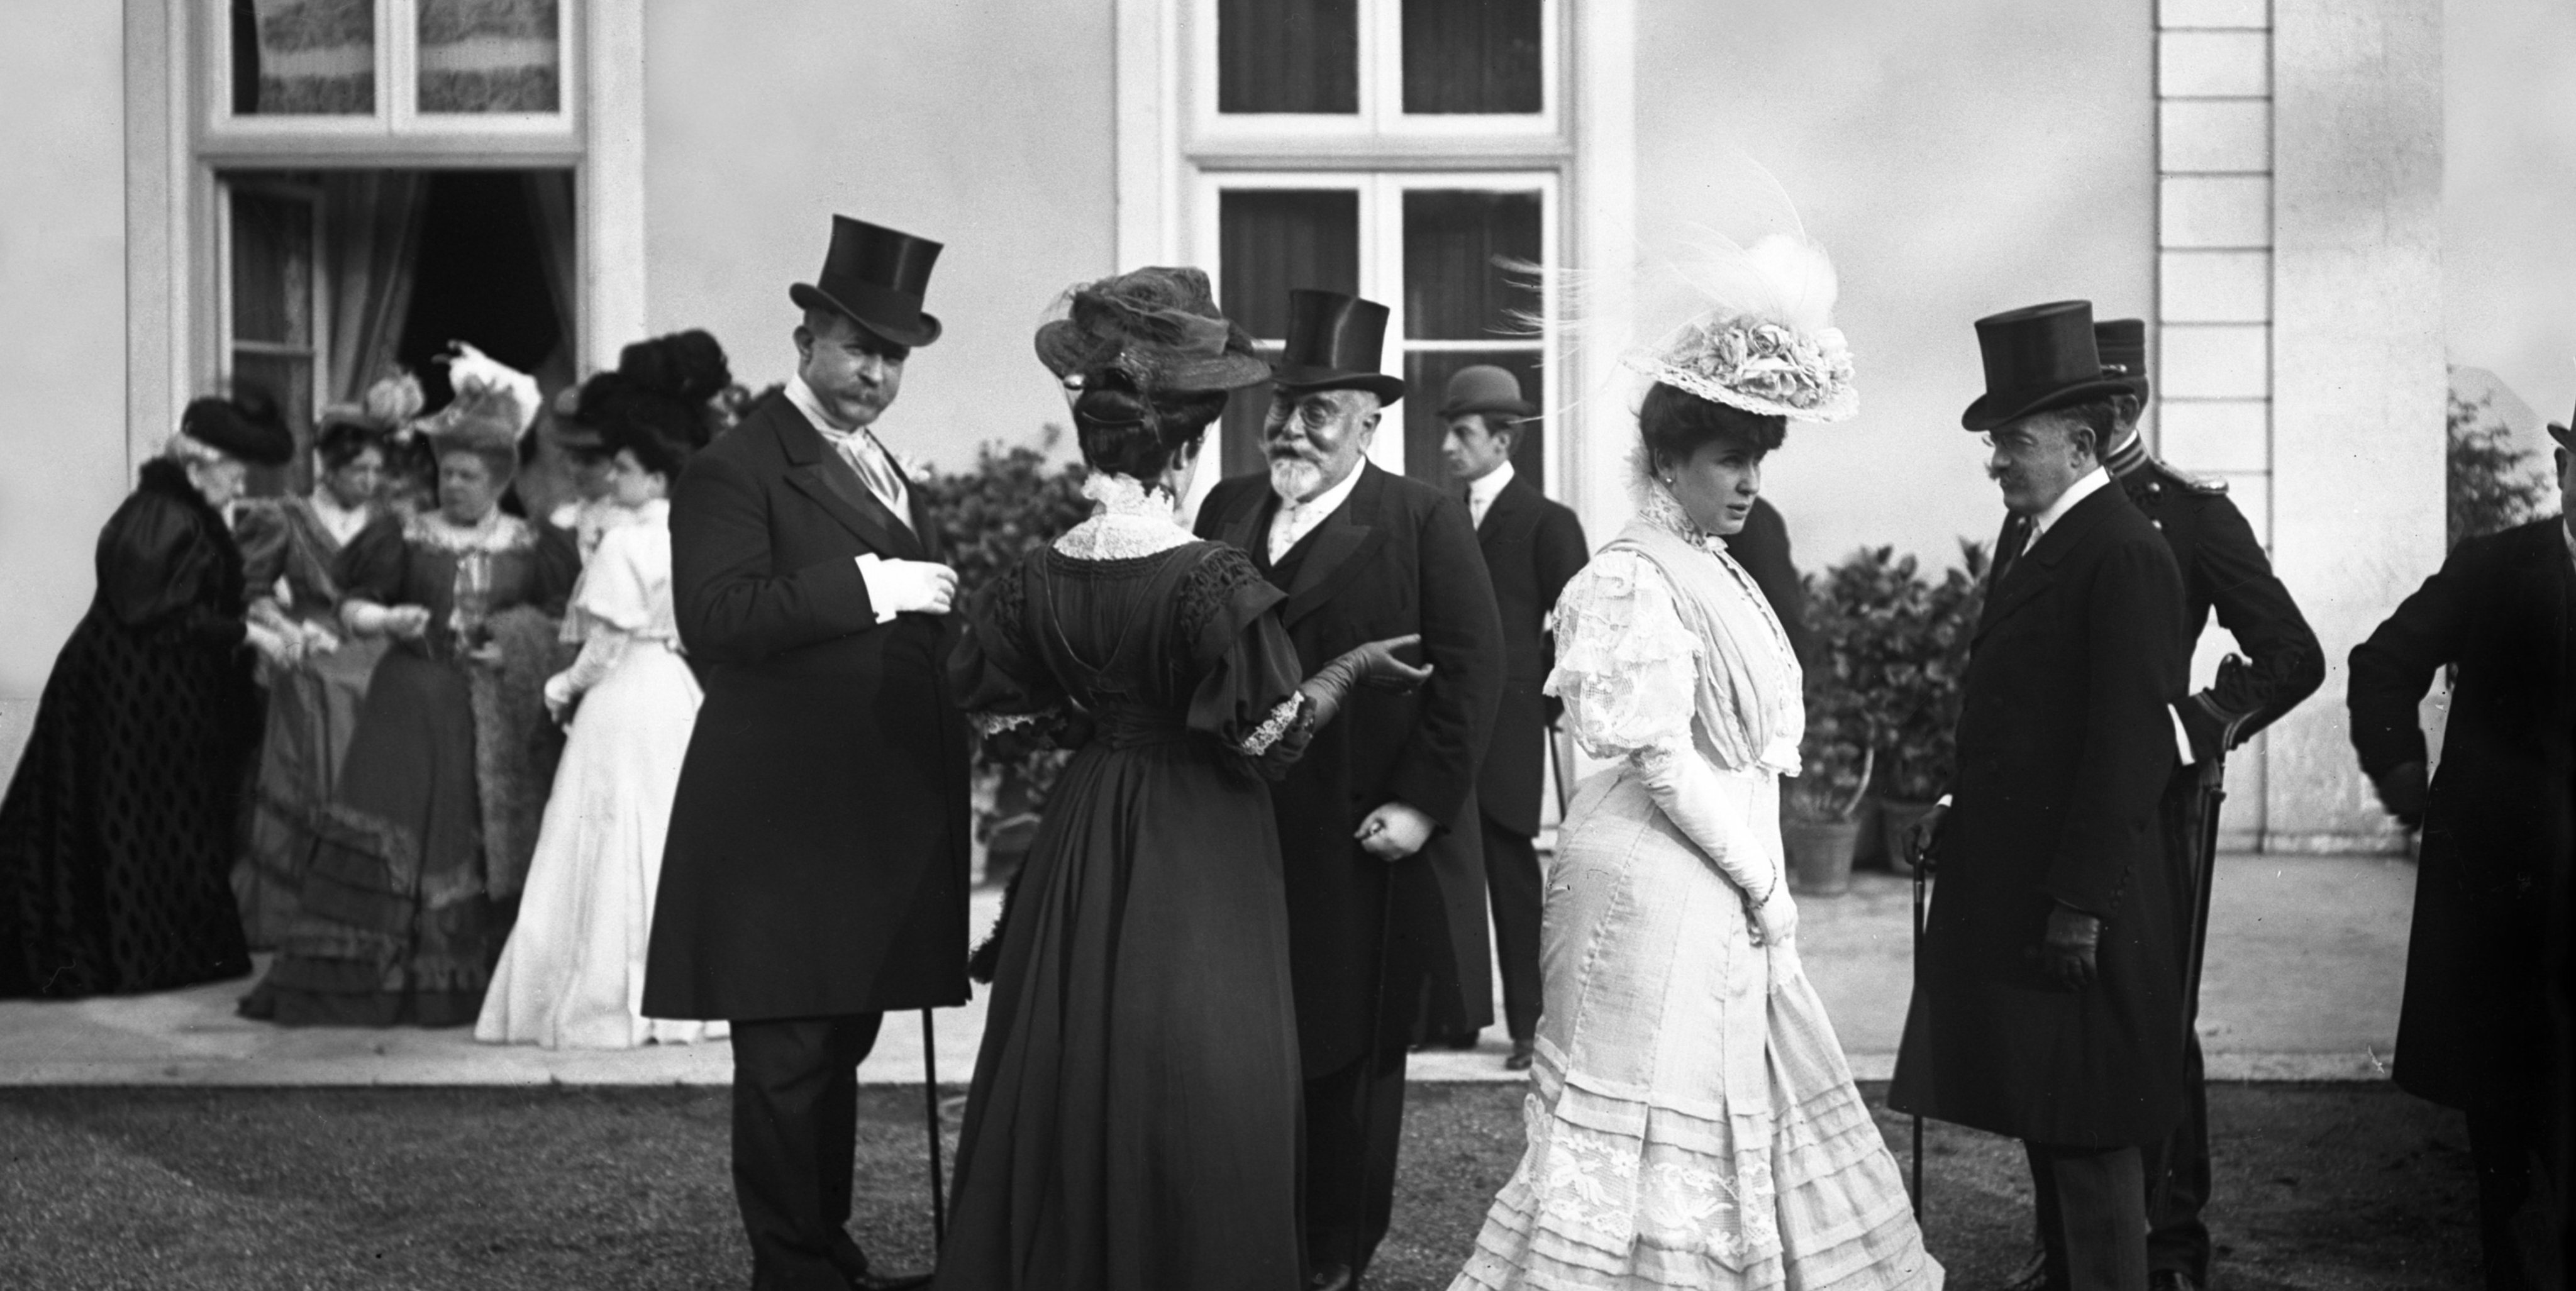 No Palacete Burnay encontrará esta e outras fotografias que compõem a exposição GardenParty, que versa sobre as festas nos jardins de Alcântara, no século XIX